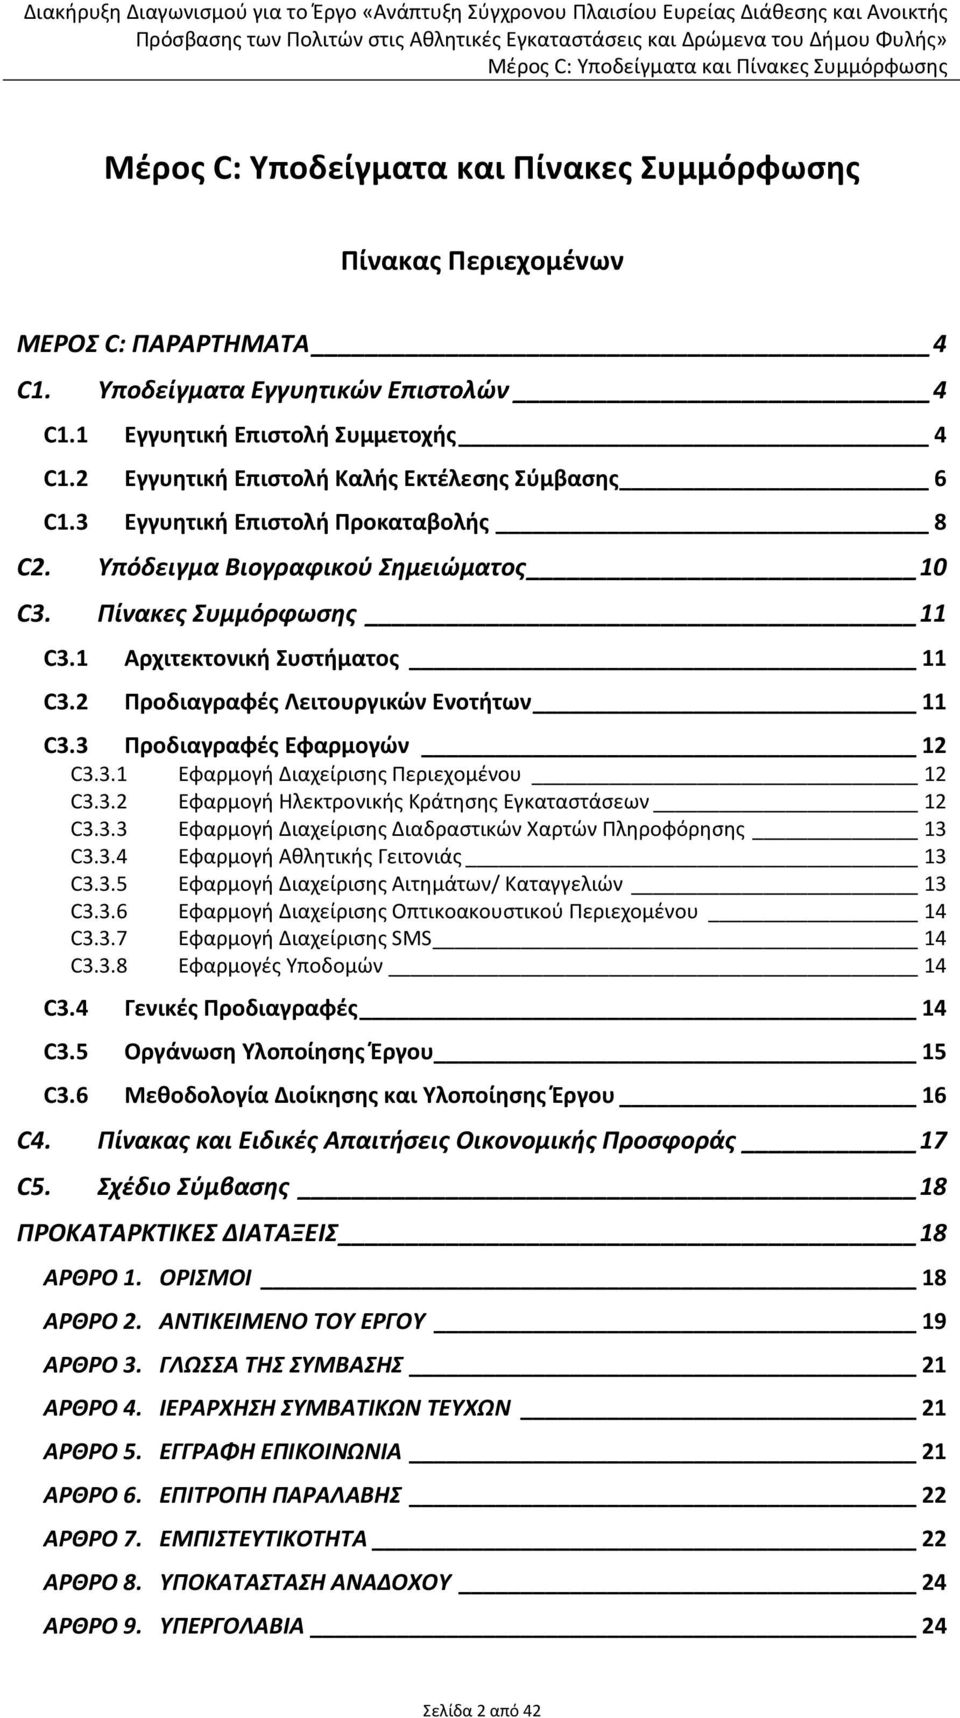 3 Προδιαγραφές Εφαρμογών 12 C3.3.1 Εφαρμογή Διαχείρισης Περιεχομένου 12 C3.3.2 Εφαρμογή Ηλεκτρονικής Κράτησης Εγκαταστάσεων 12 C3.3.3 Εφαρμογή Διαχείρισης Διαδραστικών Χαρτών Πληροφόρησης 13 C3.3.4 Εφαρμογή Αθλητικής Γειτονιάς 13 C3.